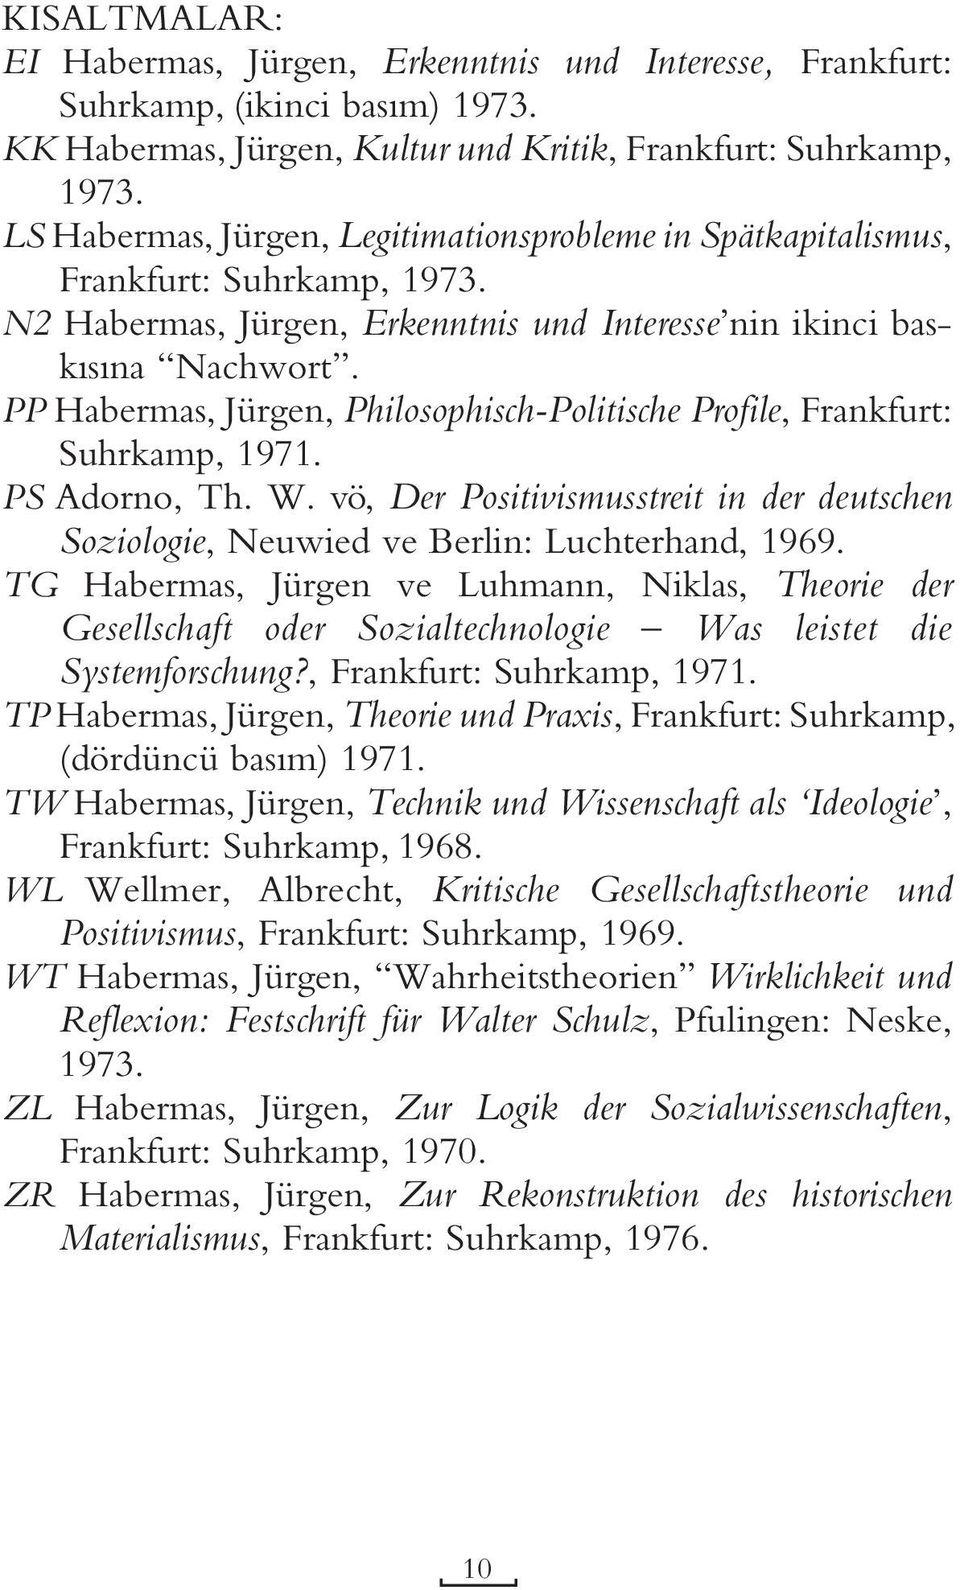 PP Habermas, Jürgen, Philosophisch-Politische Profile, Frankfurt: Suhrkamp, 1971. PS Adorno, Th. W. vö, Der Positivismusstreit in der deutschen Soziologie, Neuwied ve Berlin: Luchterhand, 1969.